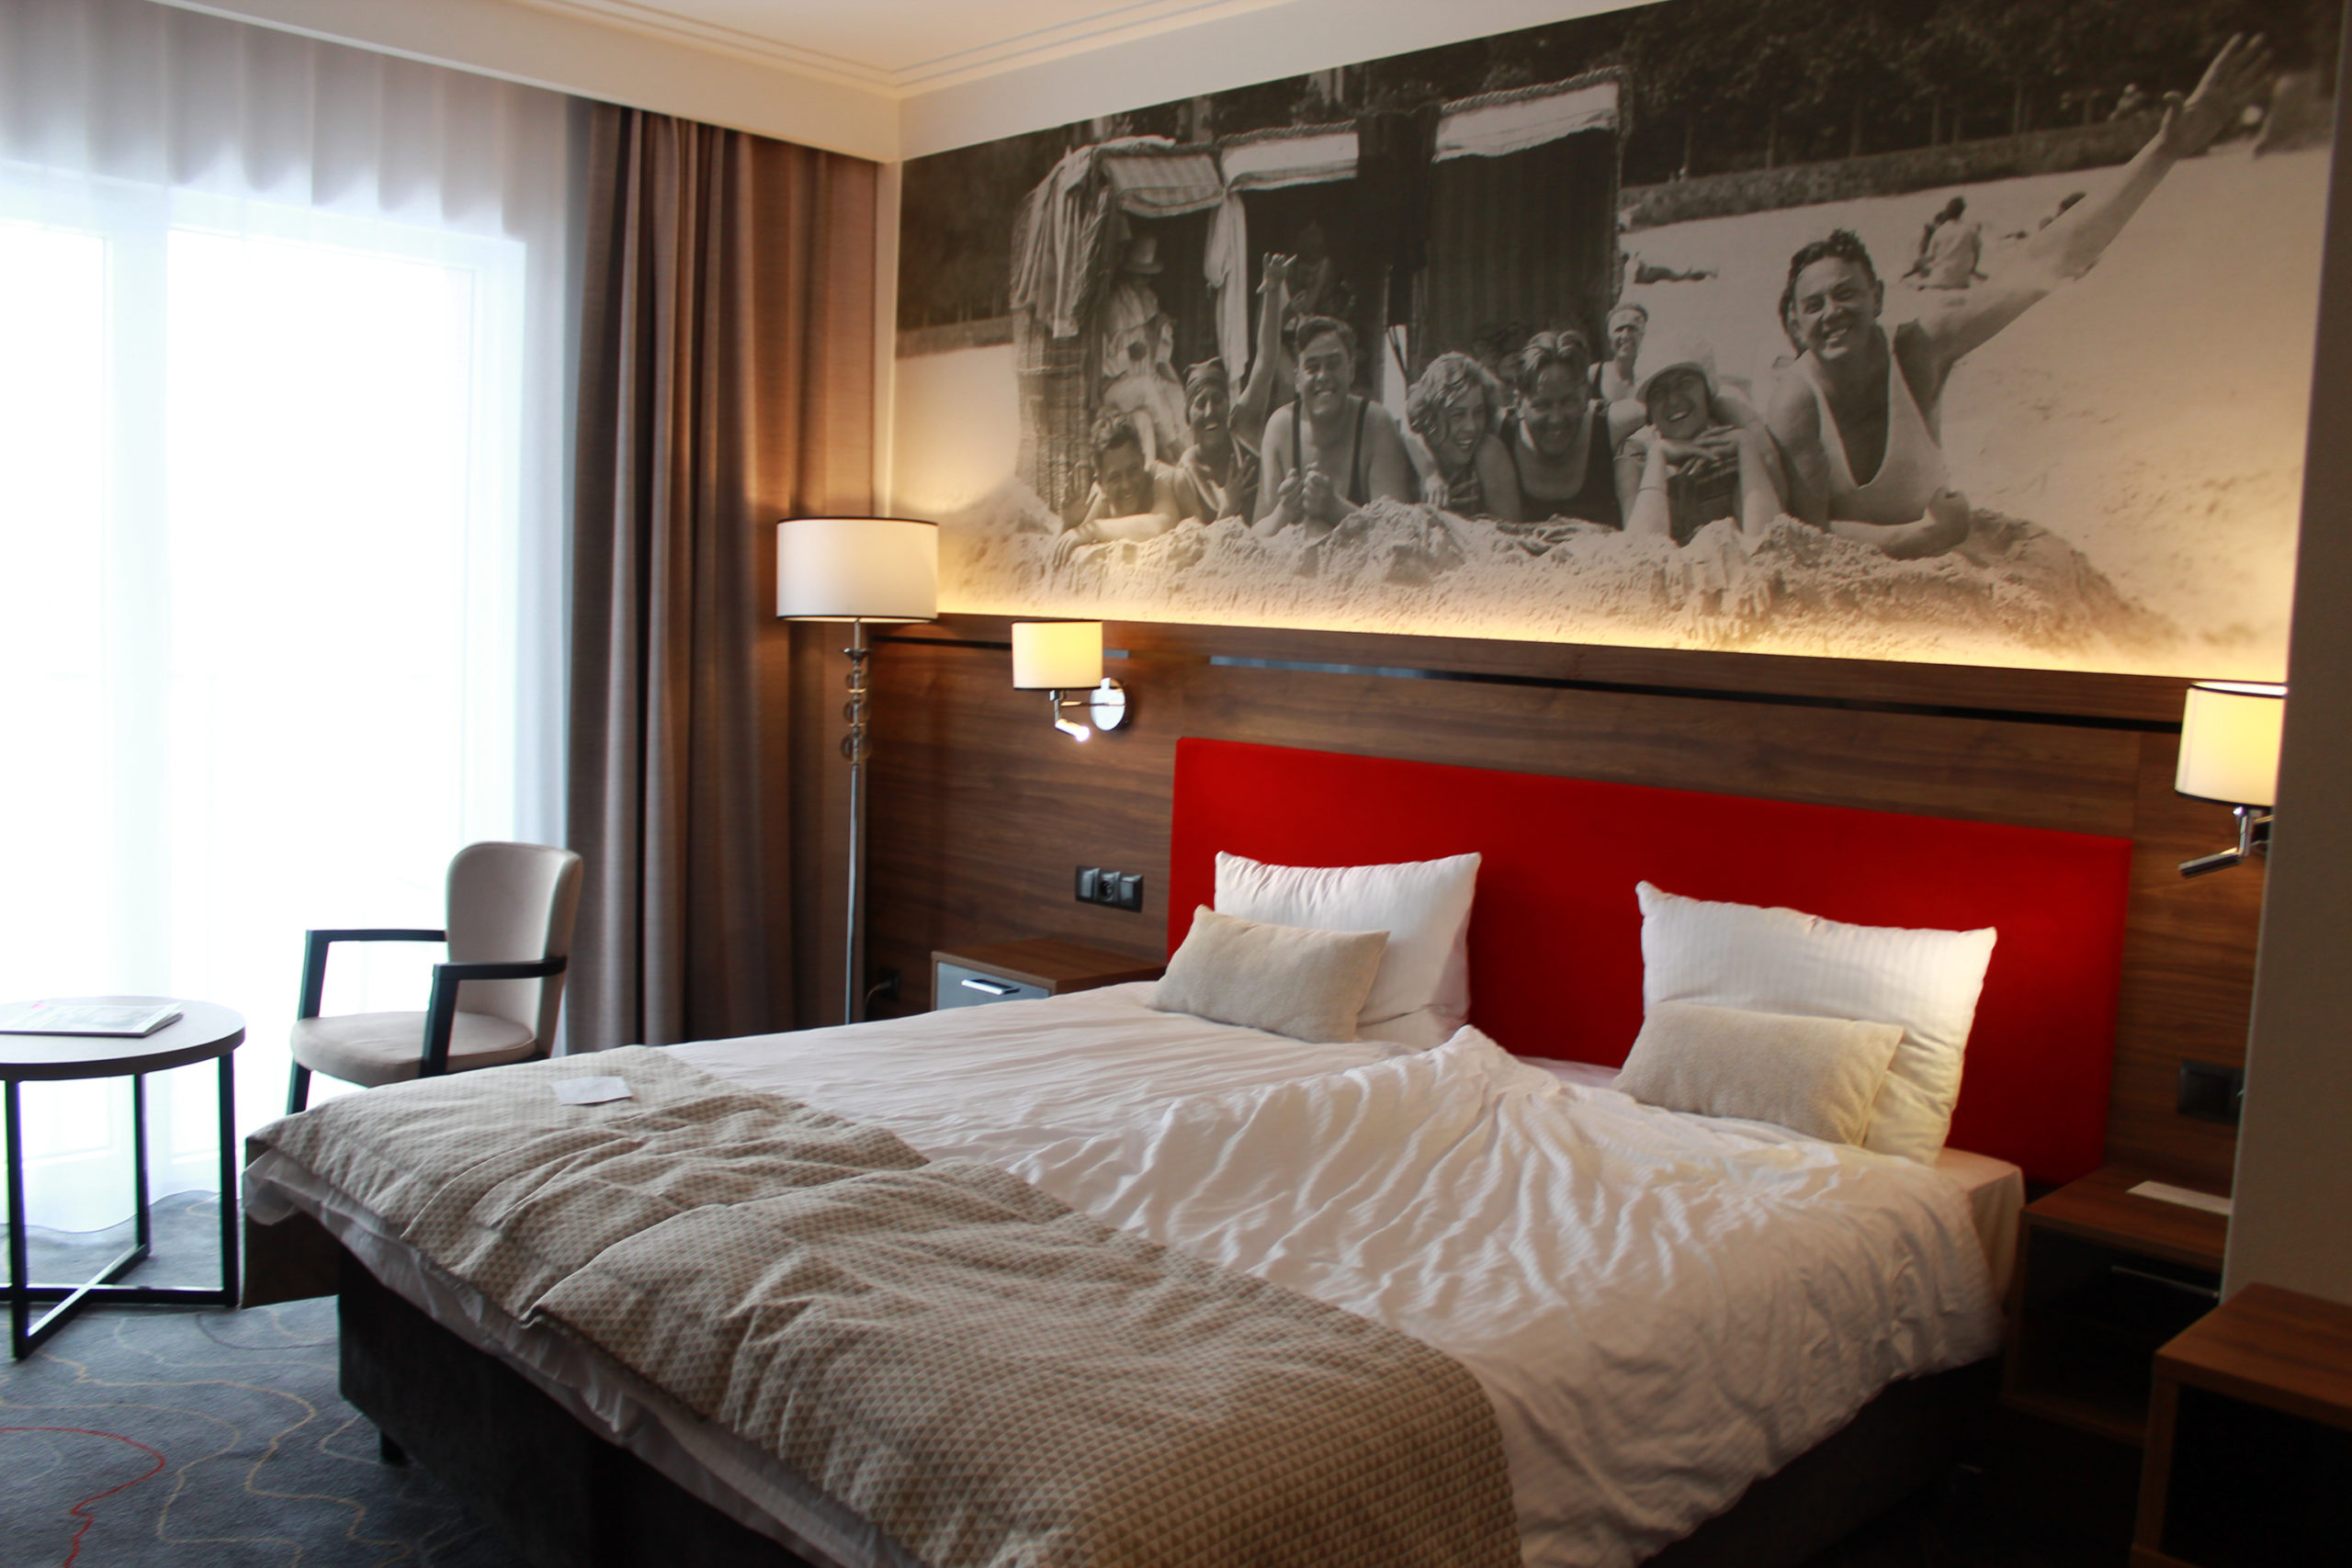 podwójne łóżko w hotelu, nad łóżkiem biało-czaje zdjęcie ludzi na plaży